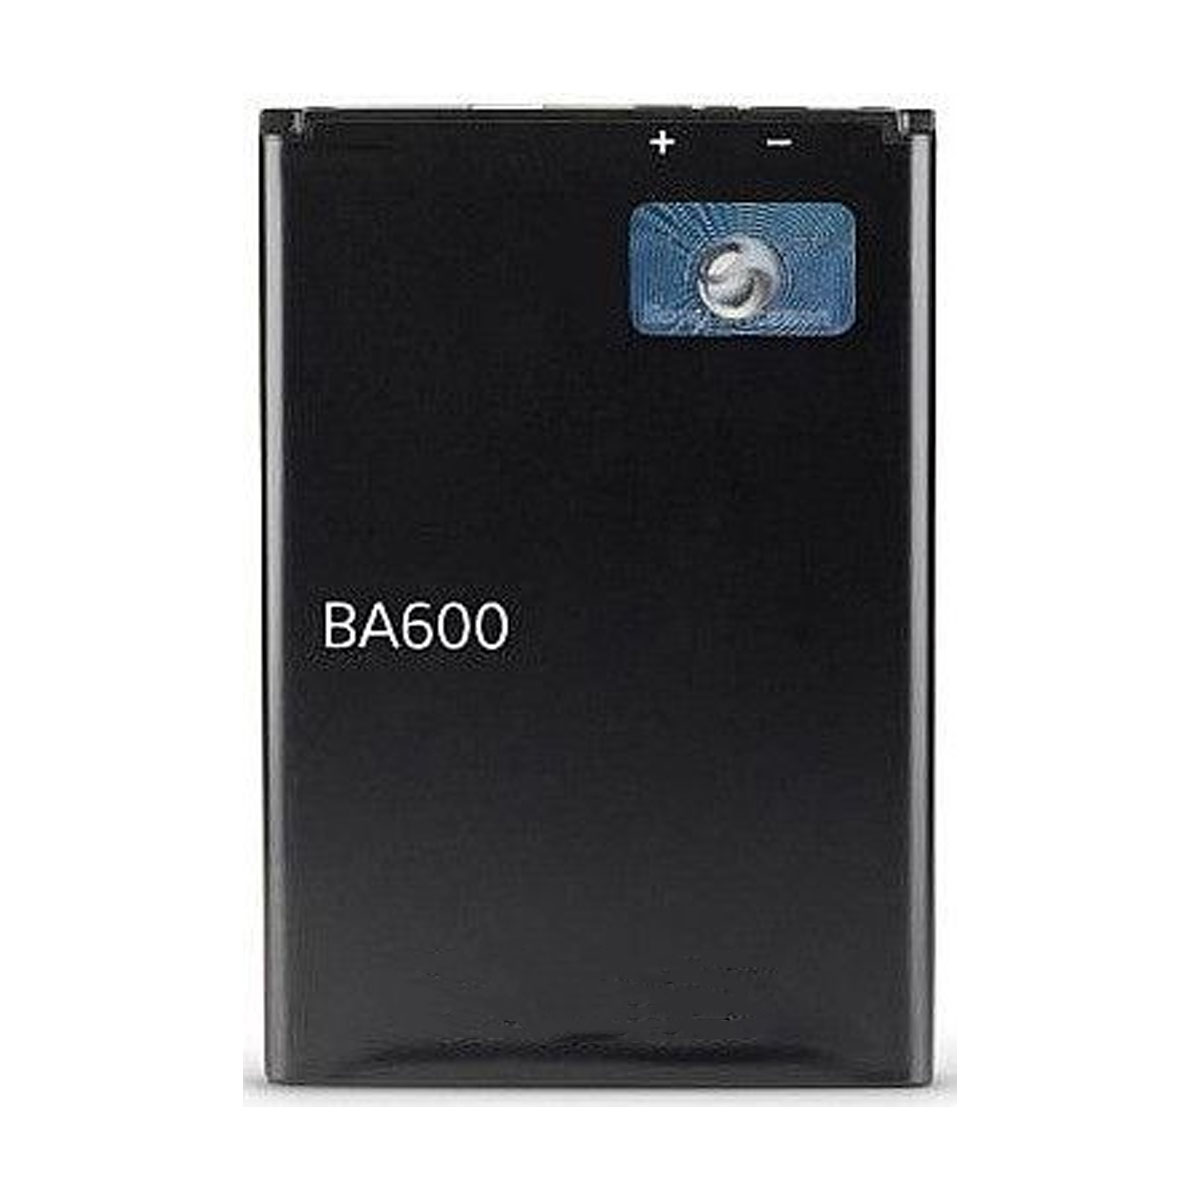 АКБ (Аккумулятор) BA600 для Sony Kumquat, ST25, ST25i, Xperia U, 1290 mAh, 3.7V, цвет черный